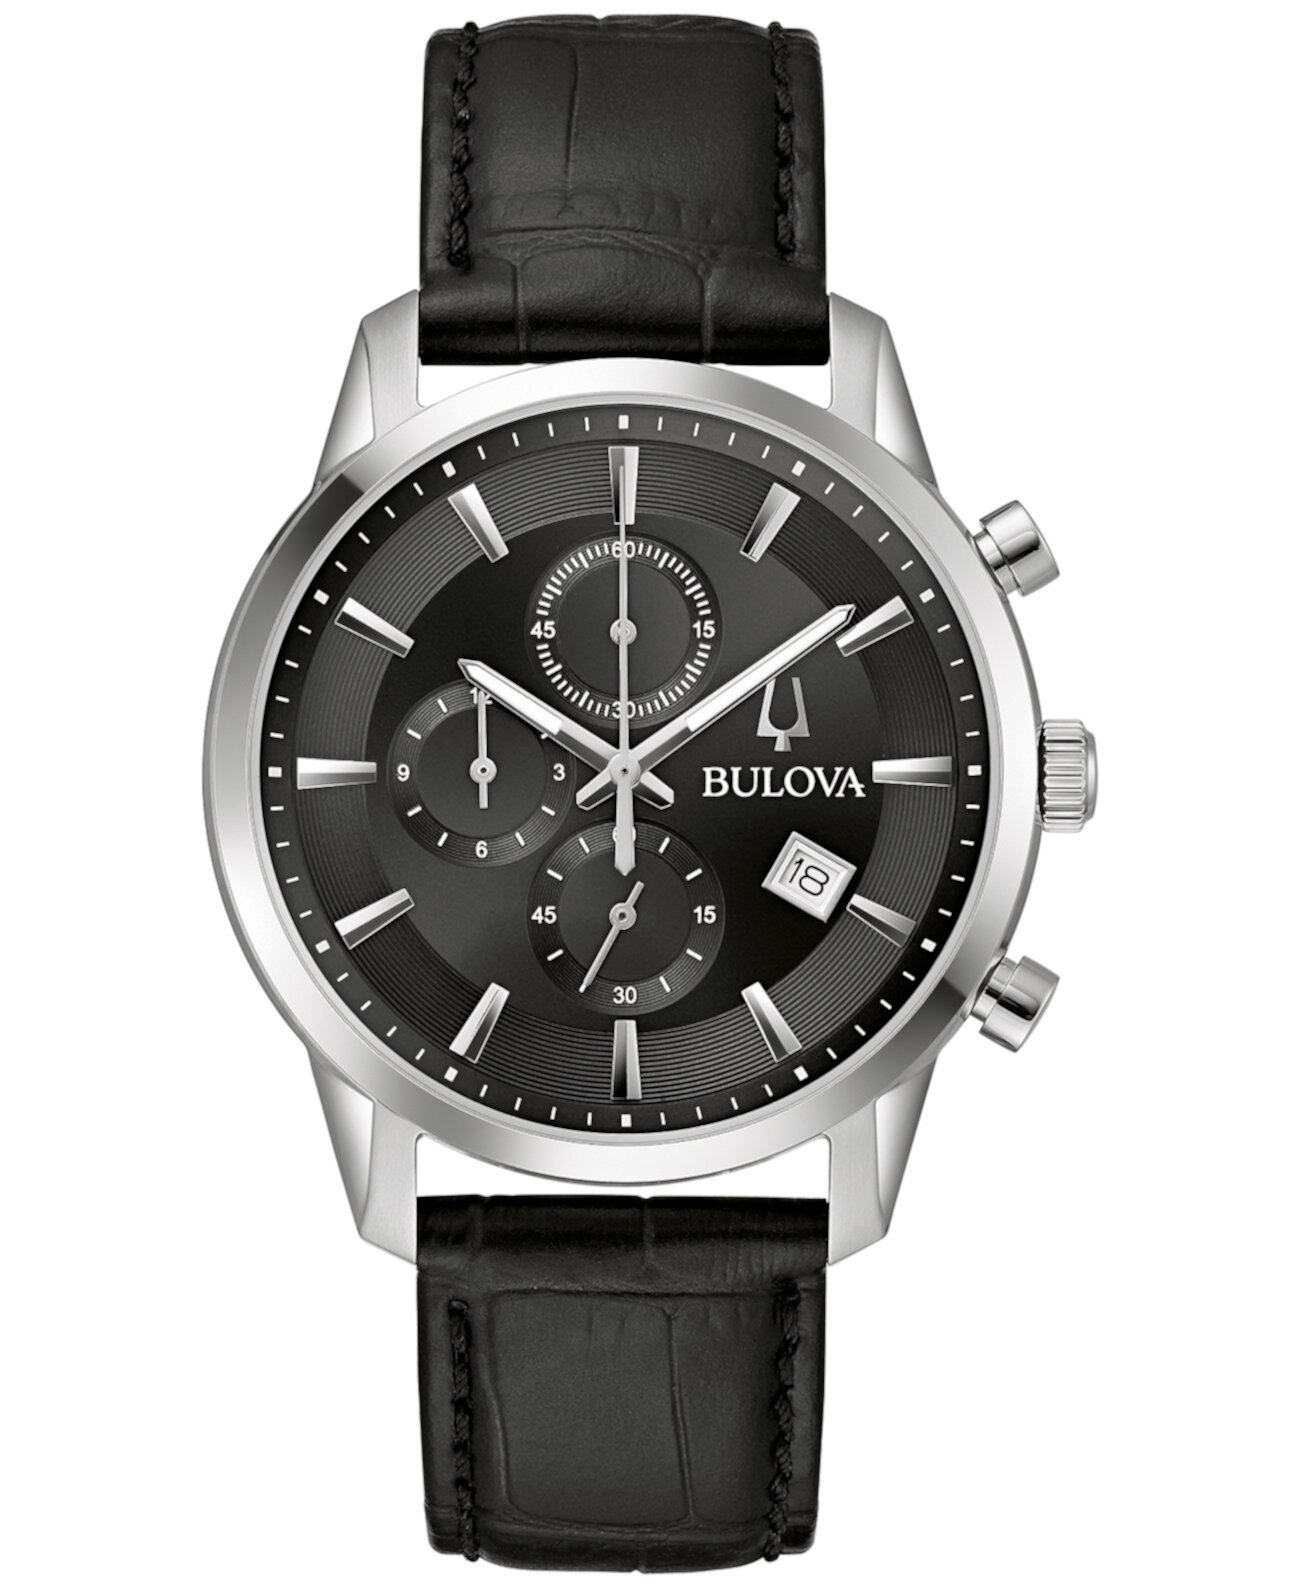 Мужские классические часы Sutton с хронографом, черный кожаный ремешок, 41 мм Bulova